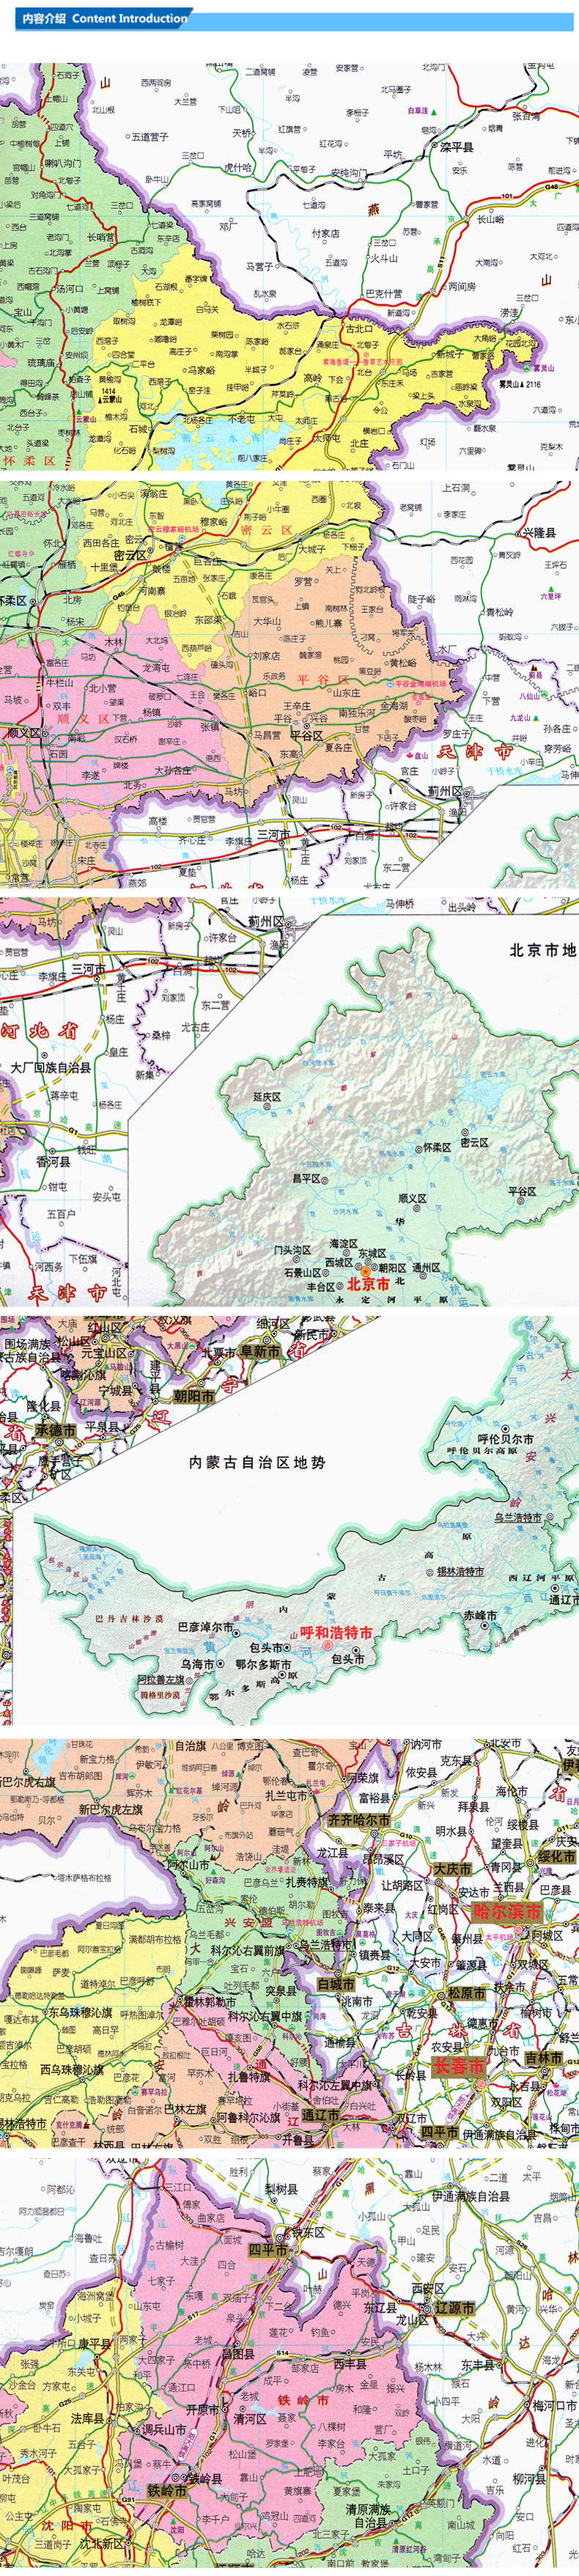 正版2018新版 大字版 中国地图册 政区 8开 全新地图内容排版 大字